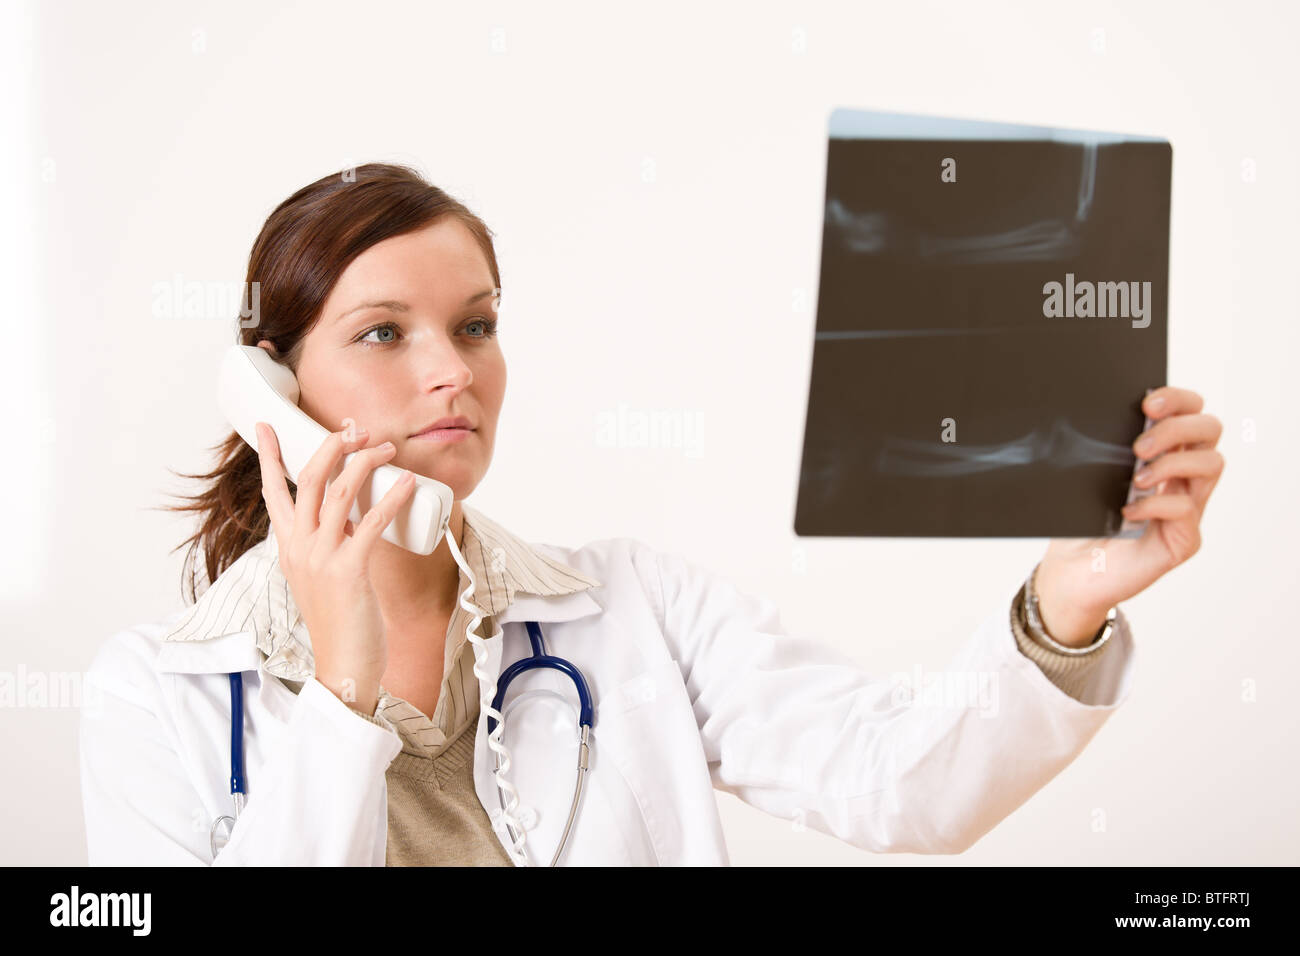 Ärztin mit Röntgen- und Telefon Check-Ergebnis Stockfoto